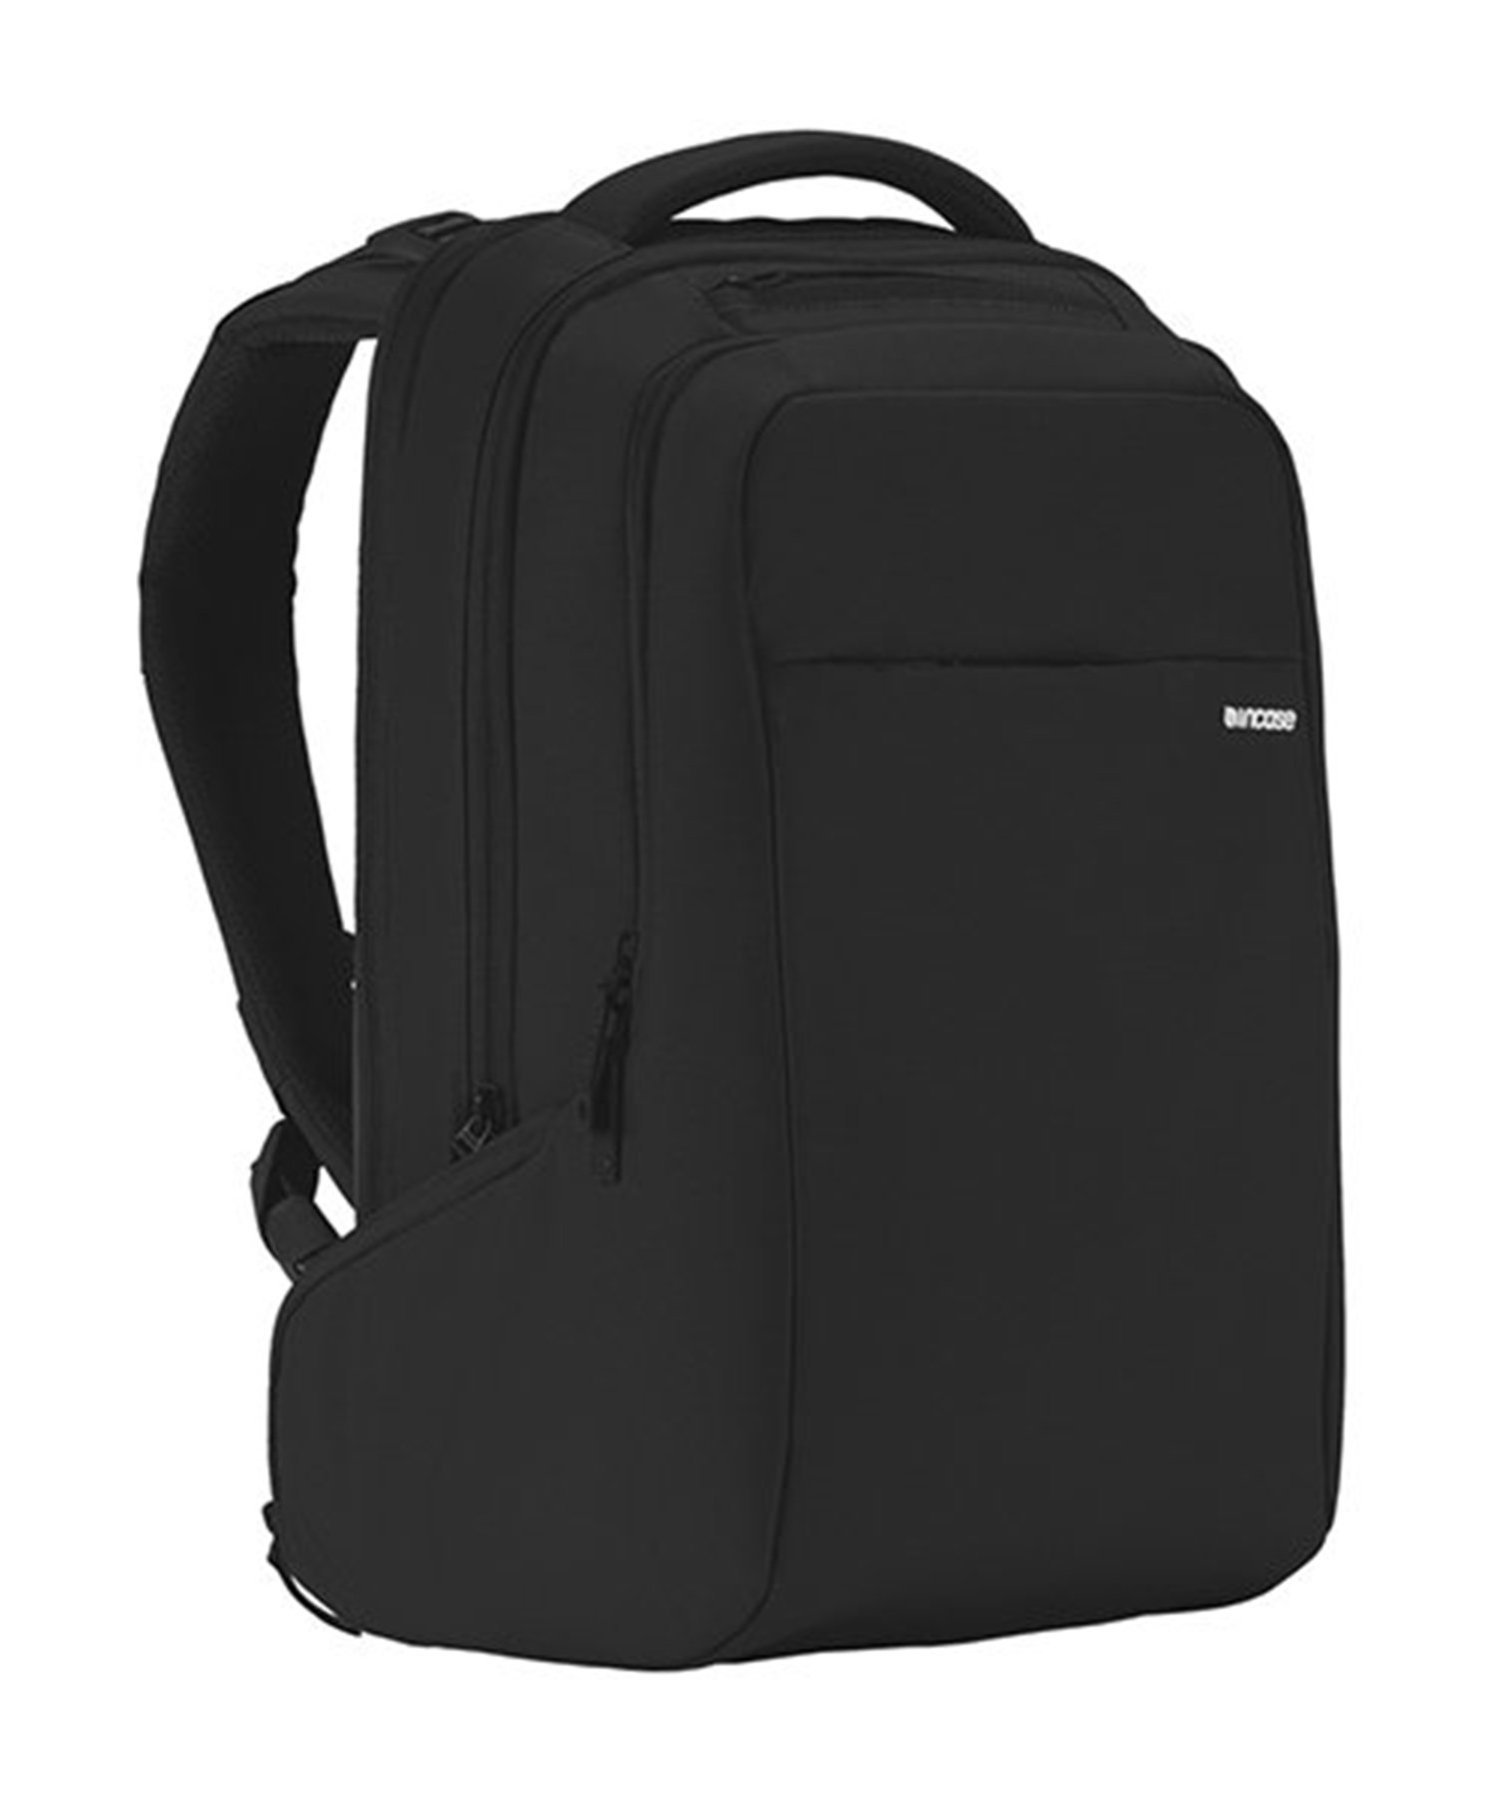 インケース ビジネスリュック メンズ Incase (U)CL55532 ICON Backpack 16inch バックパック Incace インケース バッグ リュック・バックパック ブラック【送料無料】